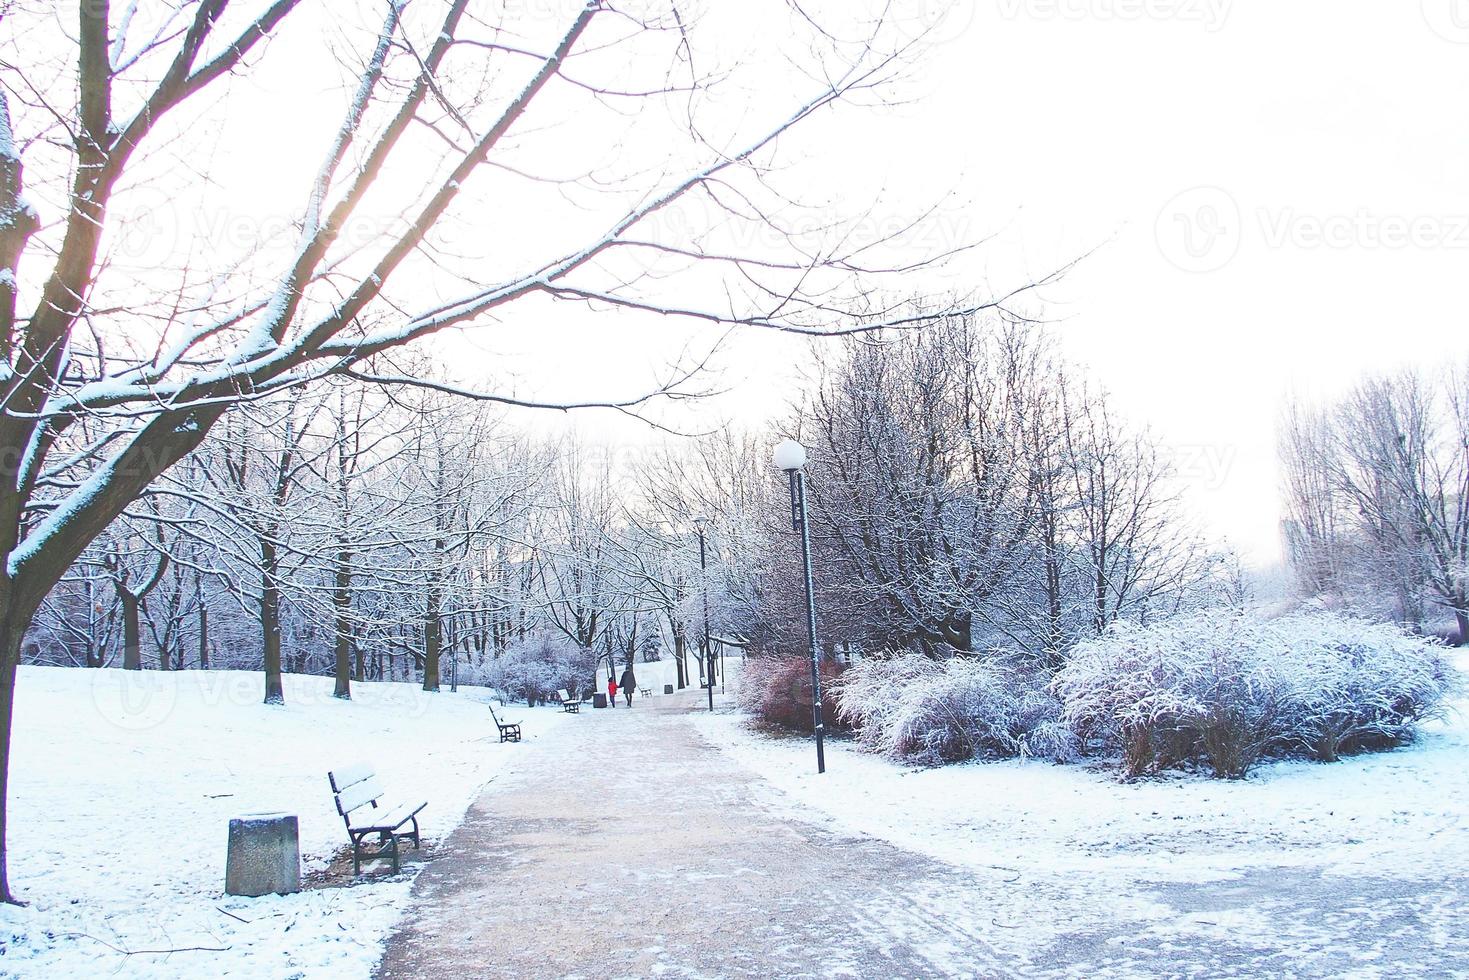 inverno panorama com fresco neve e árvores foto